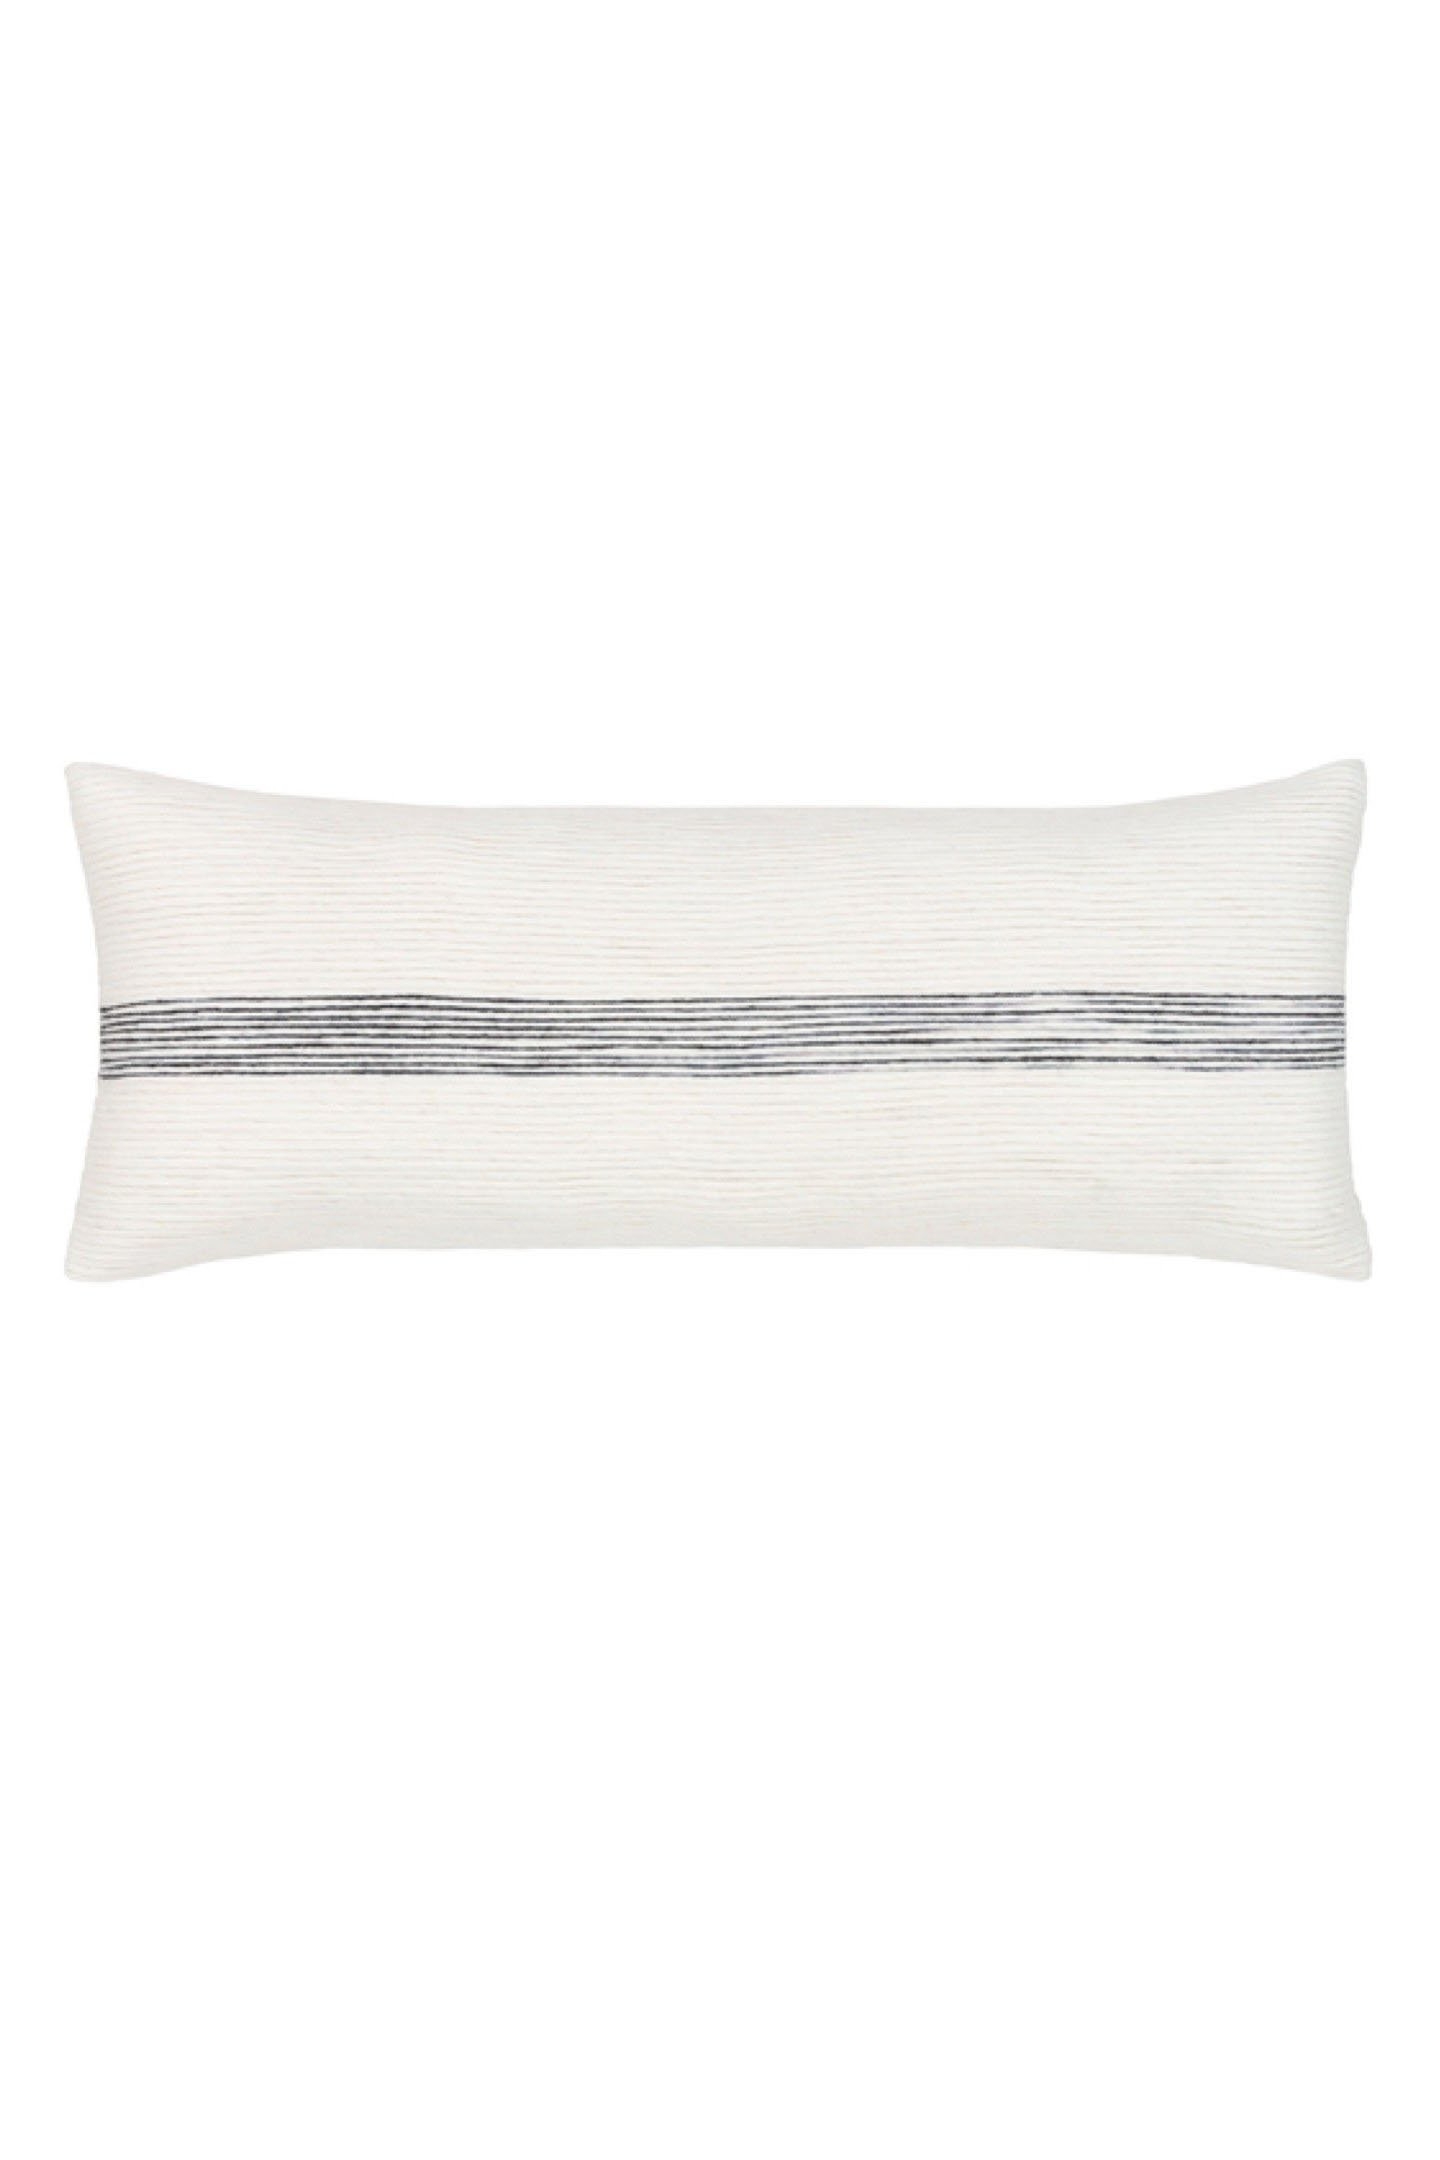 Burton Lumbar Pillow Cover - Image 0